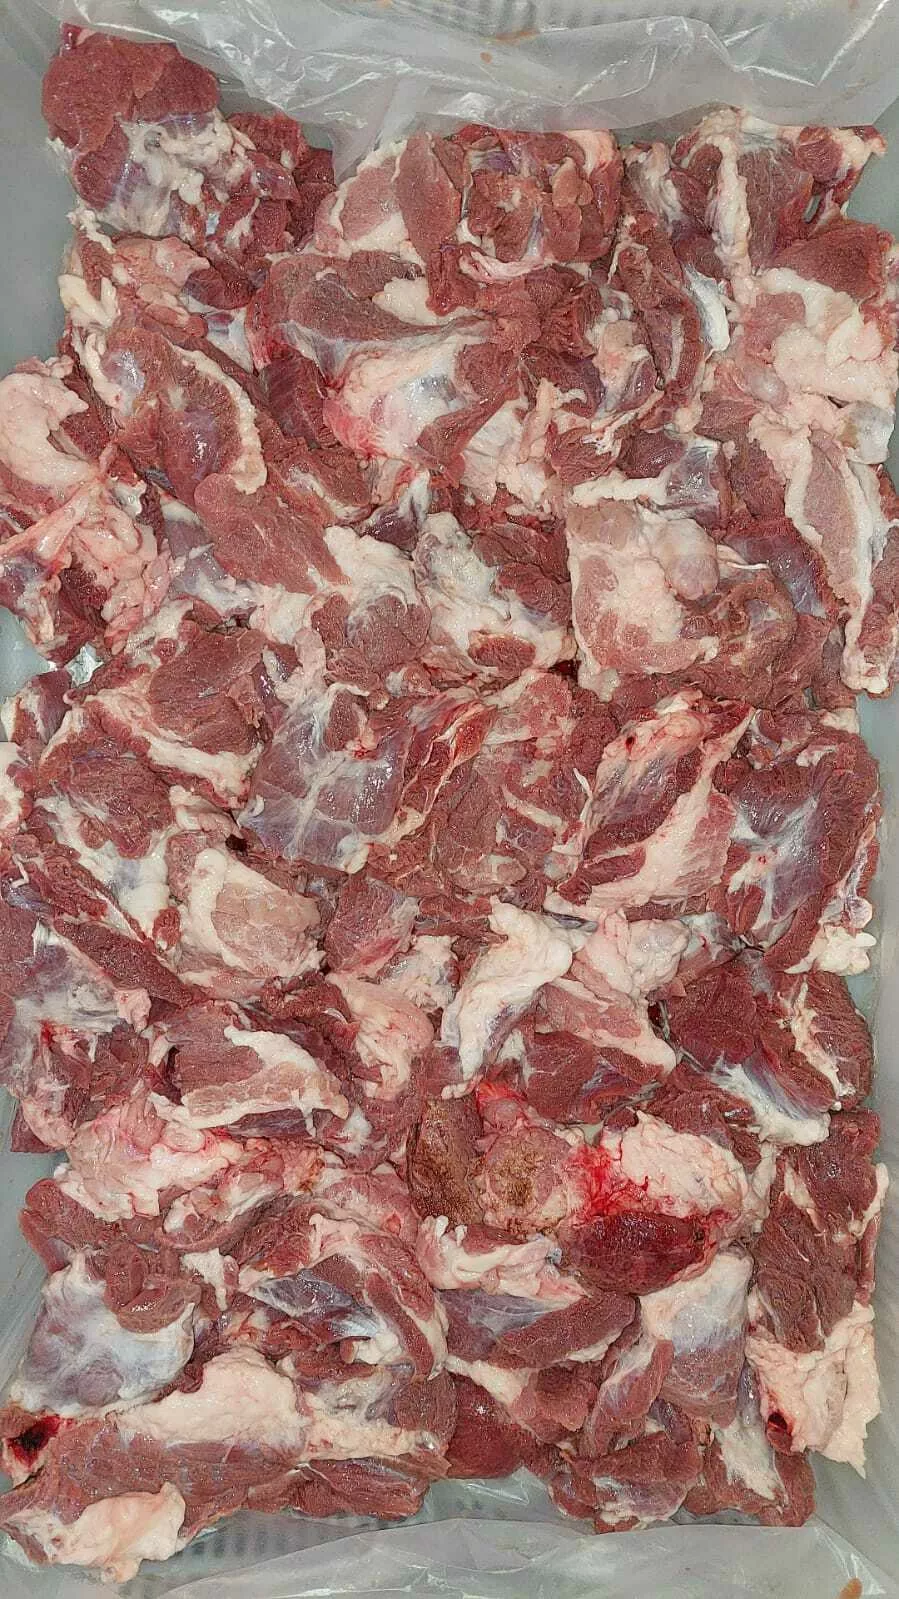 подъязычку свиную и мясо пищевода в Москве